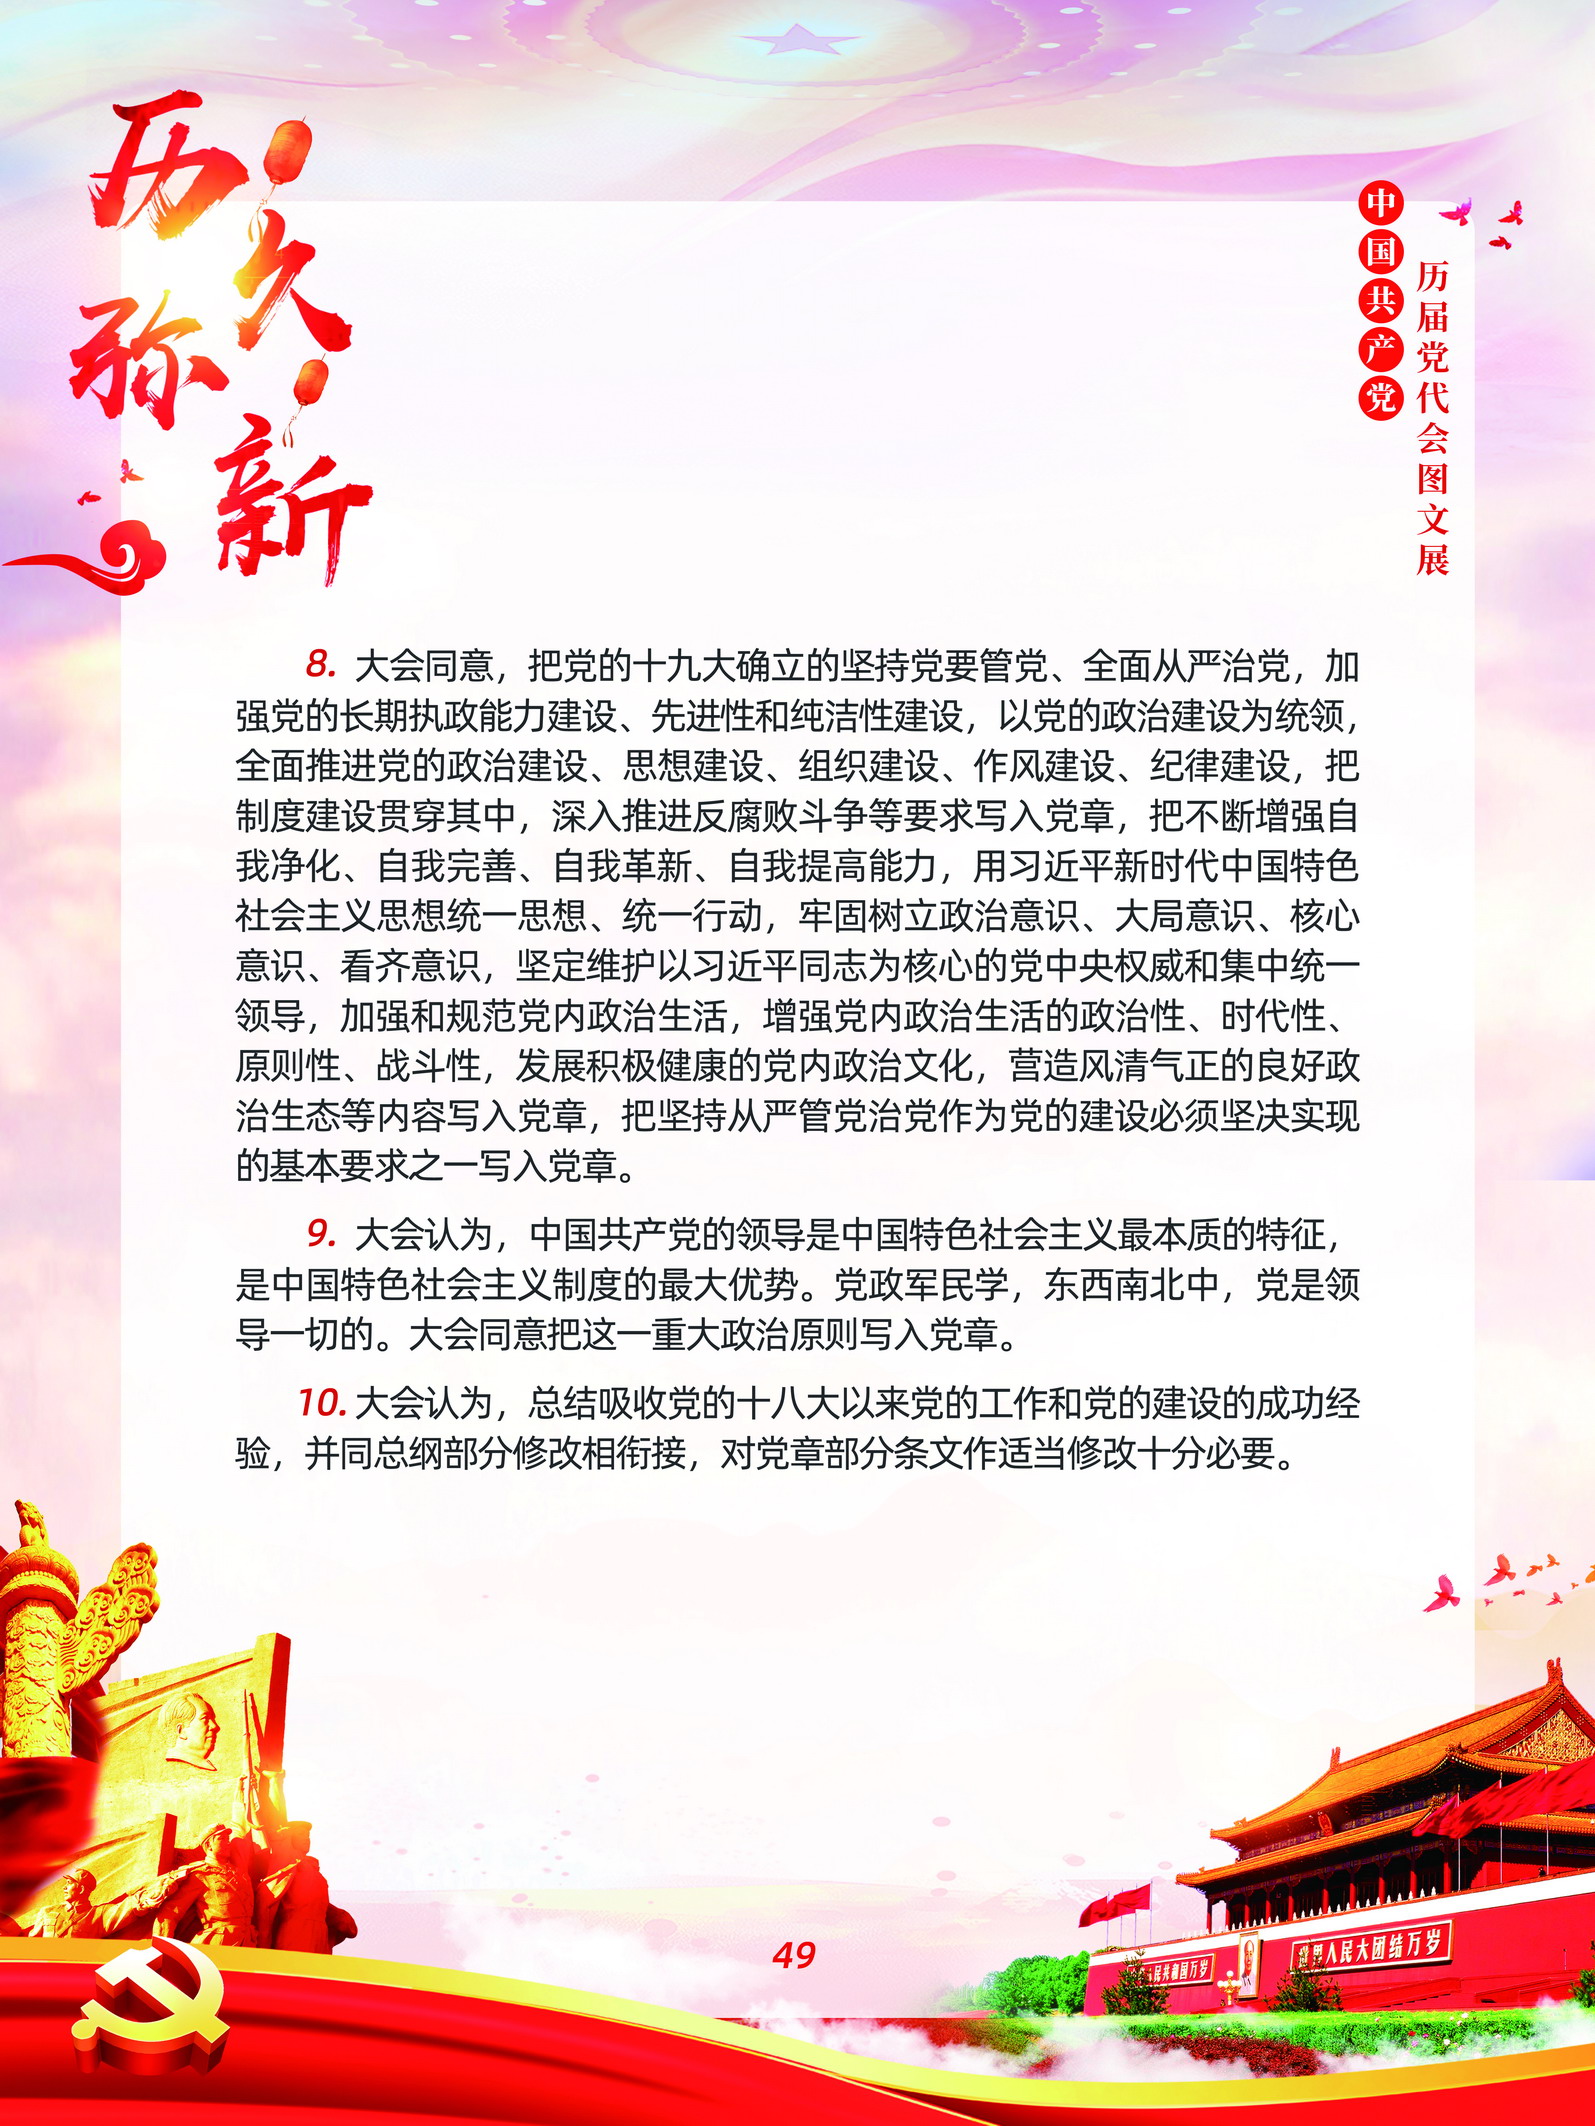 中国共产党历届党代会图文展_图48